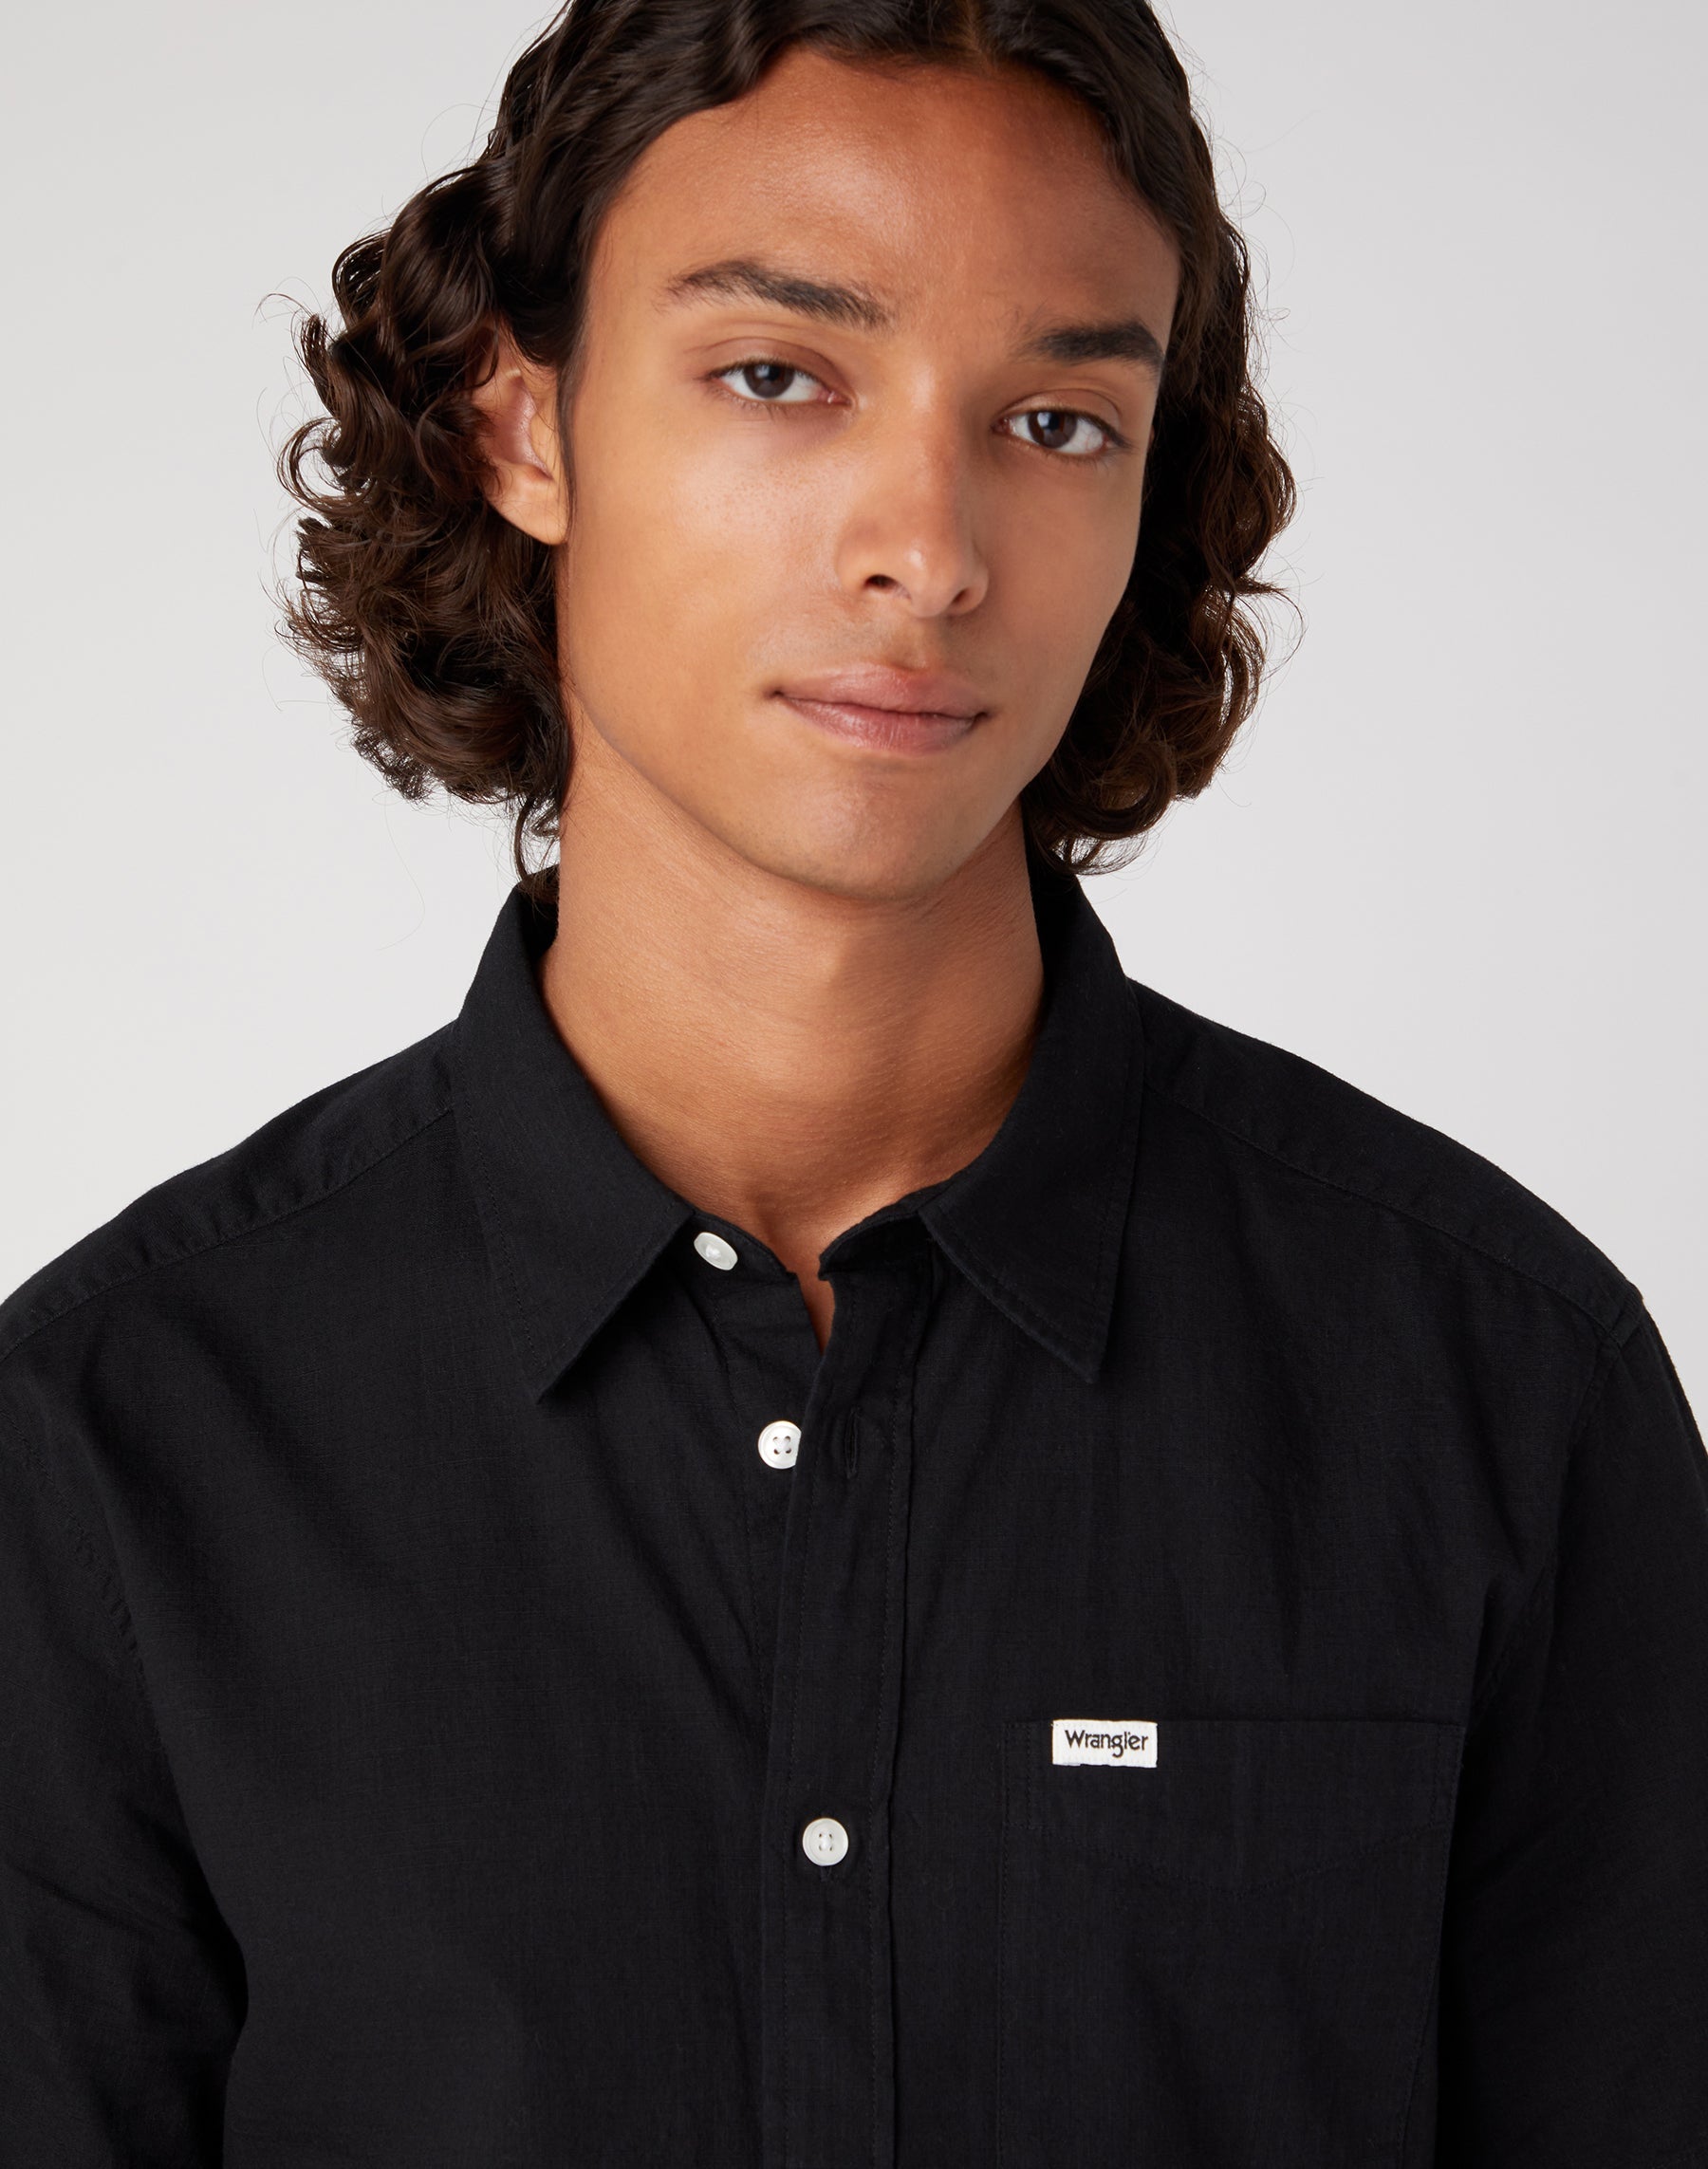 Short Sleeve One Pocket Shirt in Black Hemden Wrangler   